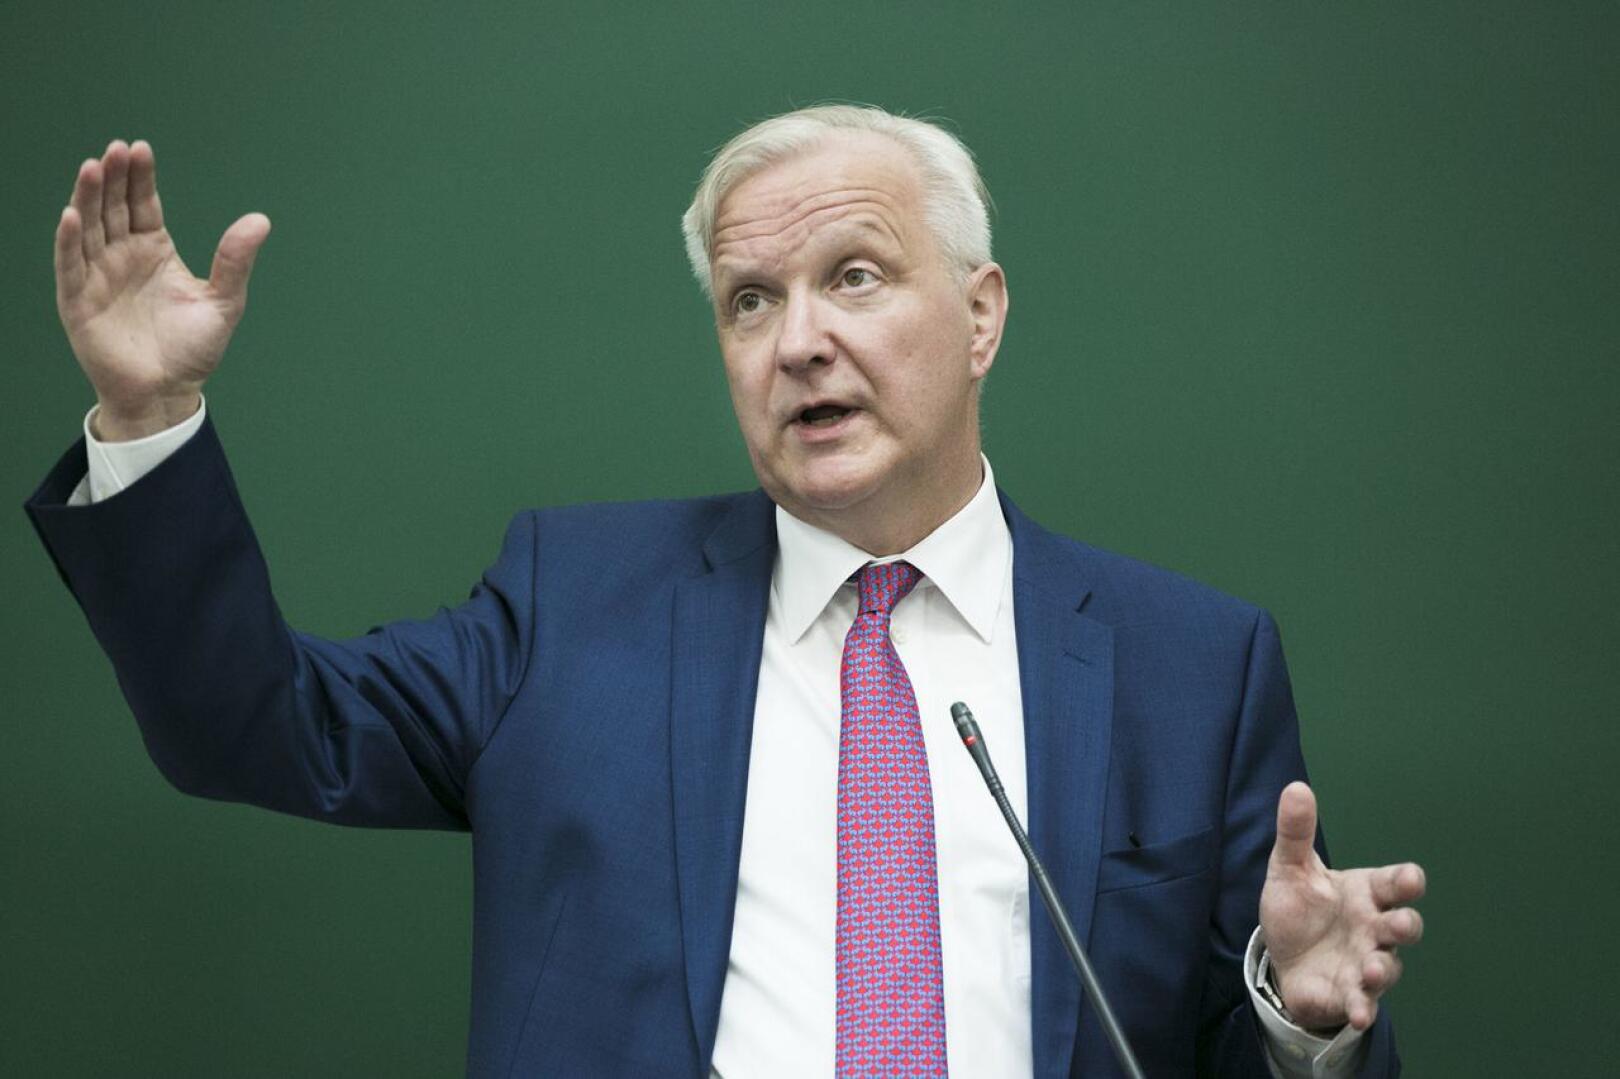 Olen pohtinut asiaa. En sulje pois presidenttiehdokkuutta, Olli Rehn vastasi presidenttiehdokkuuteensa liittyvään kysymykseen Ylen ykkösaamussa.